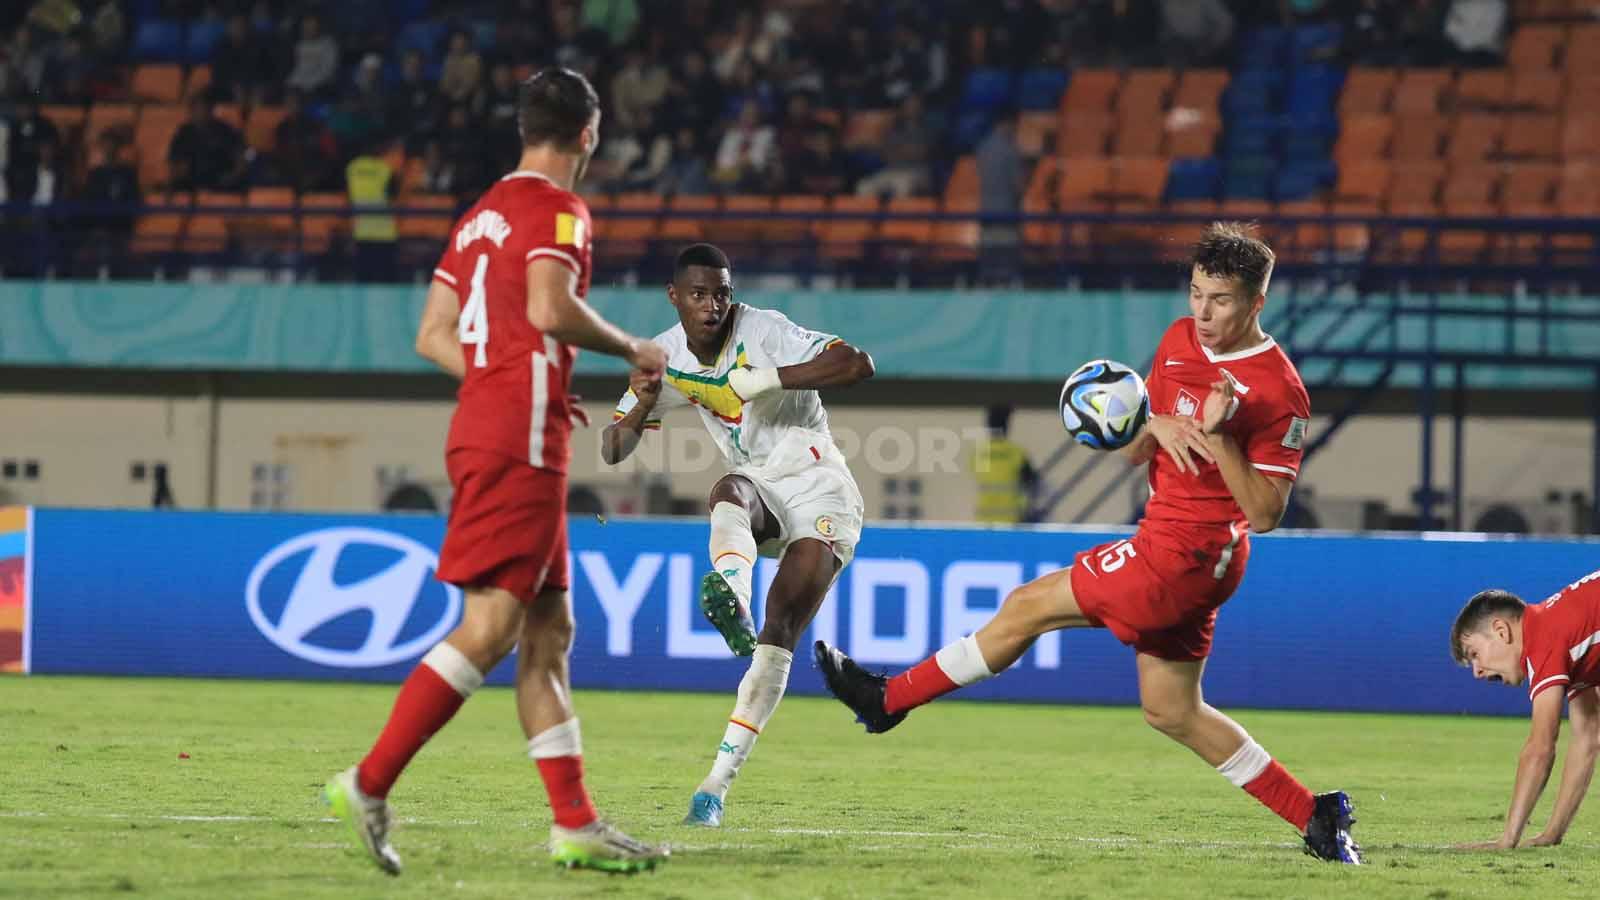 Pemain depan Timnas Senegal U-17, Mamadou Gning, terlihat melepas tembakan ke area lawan.